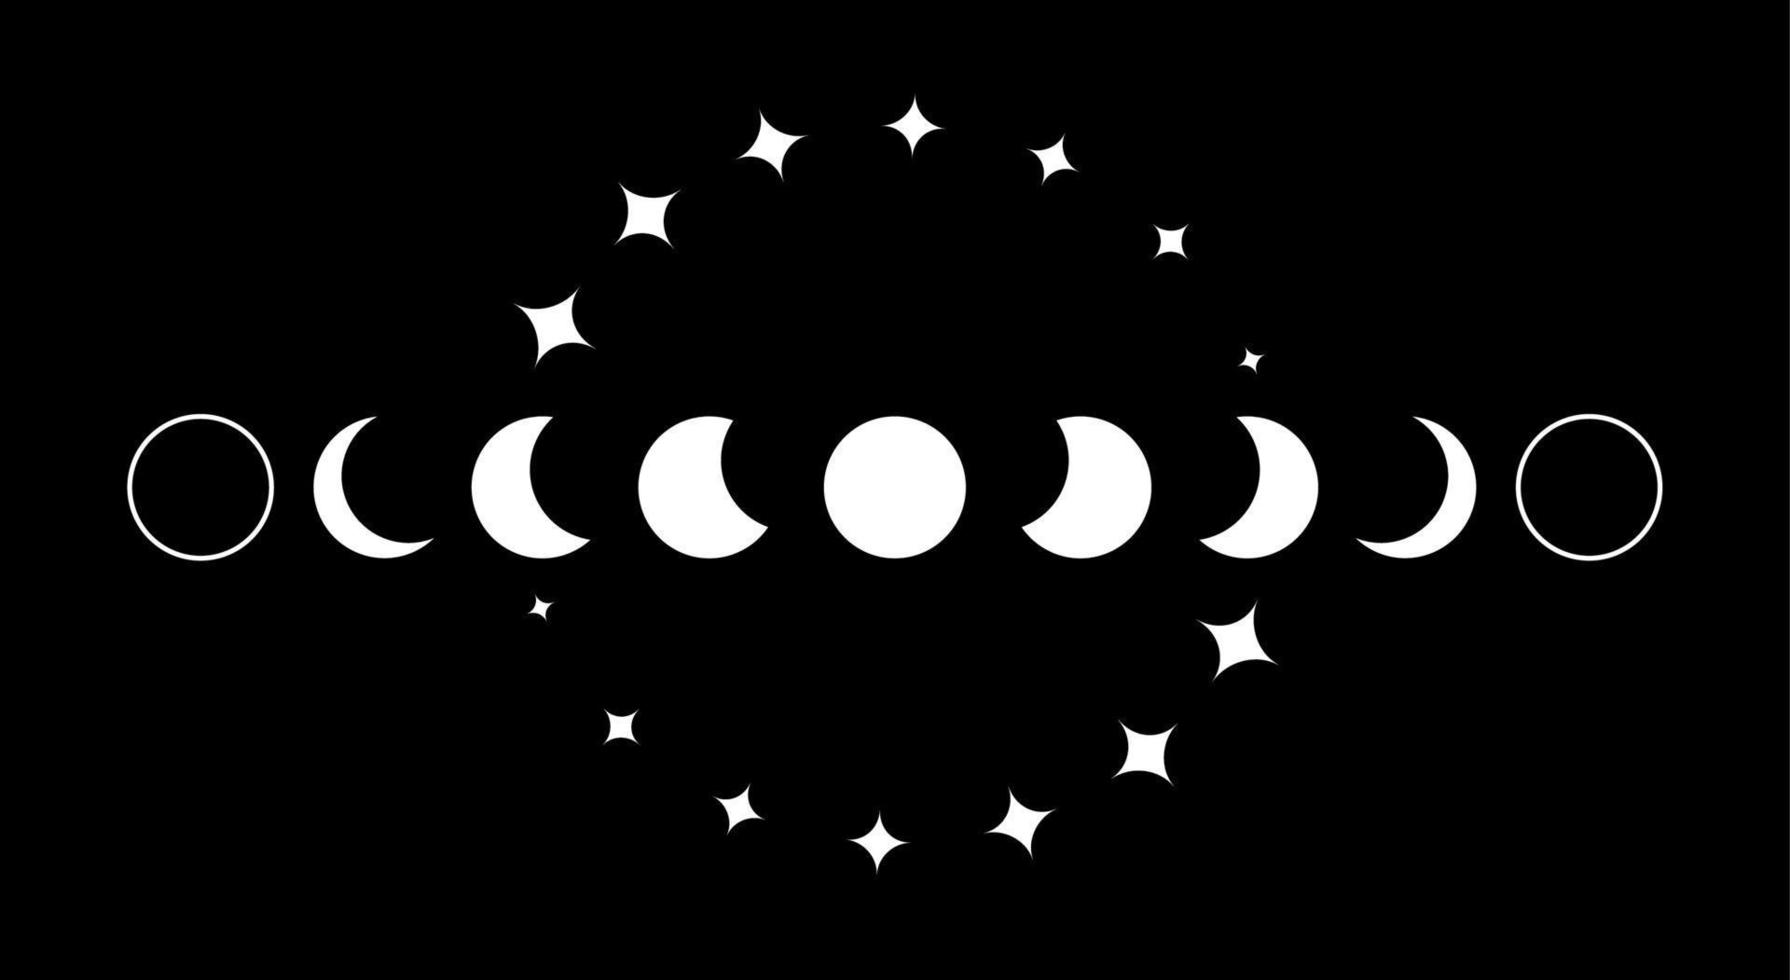 maanfasen wit grenskader, wicca banner teken. drievoudige maan heidense Wicca godin symbool, heilige geometrie, wiel van het jaar en sterren, vector geïsoleerd op zwarte achtergrond